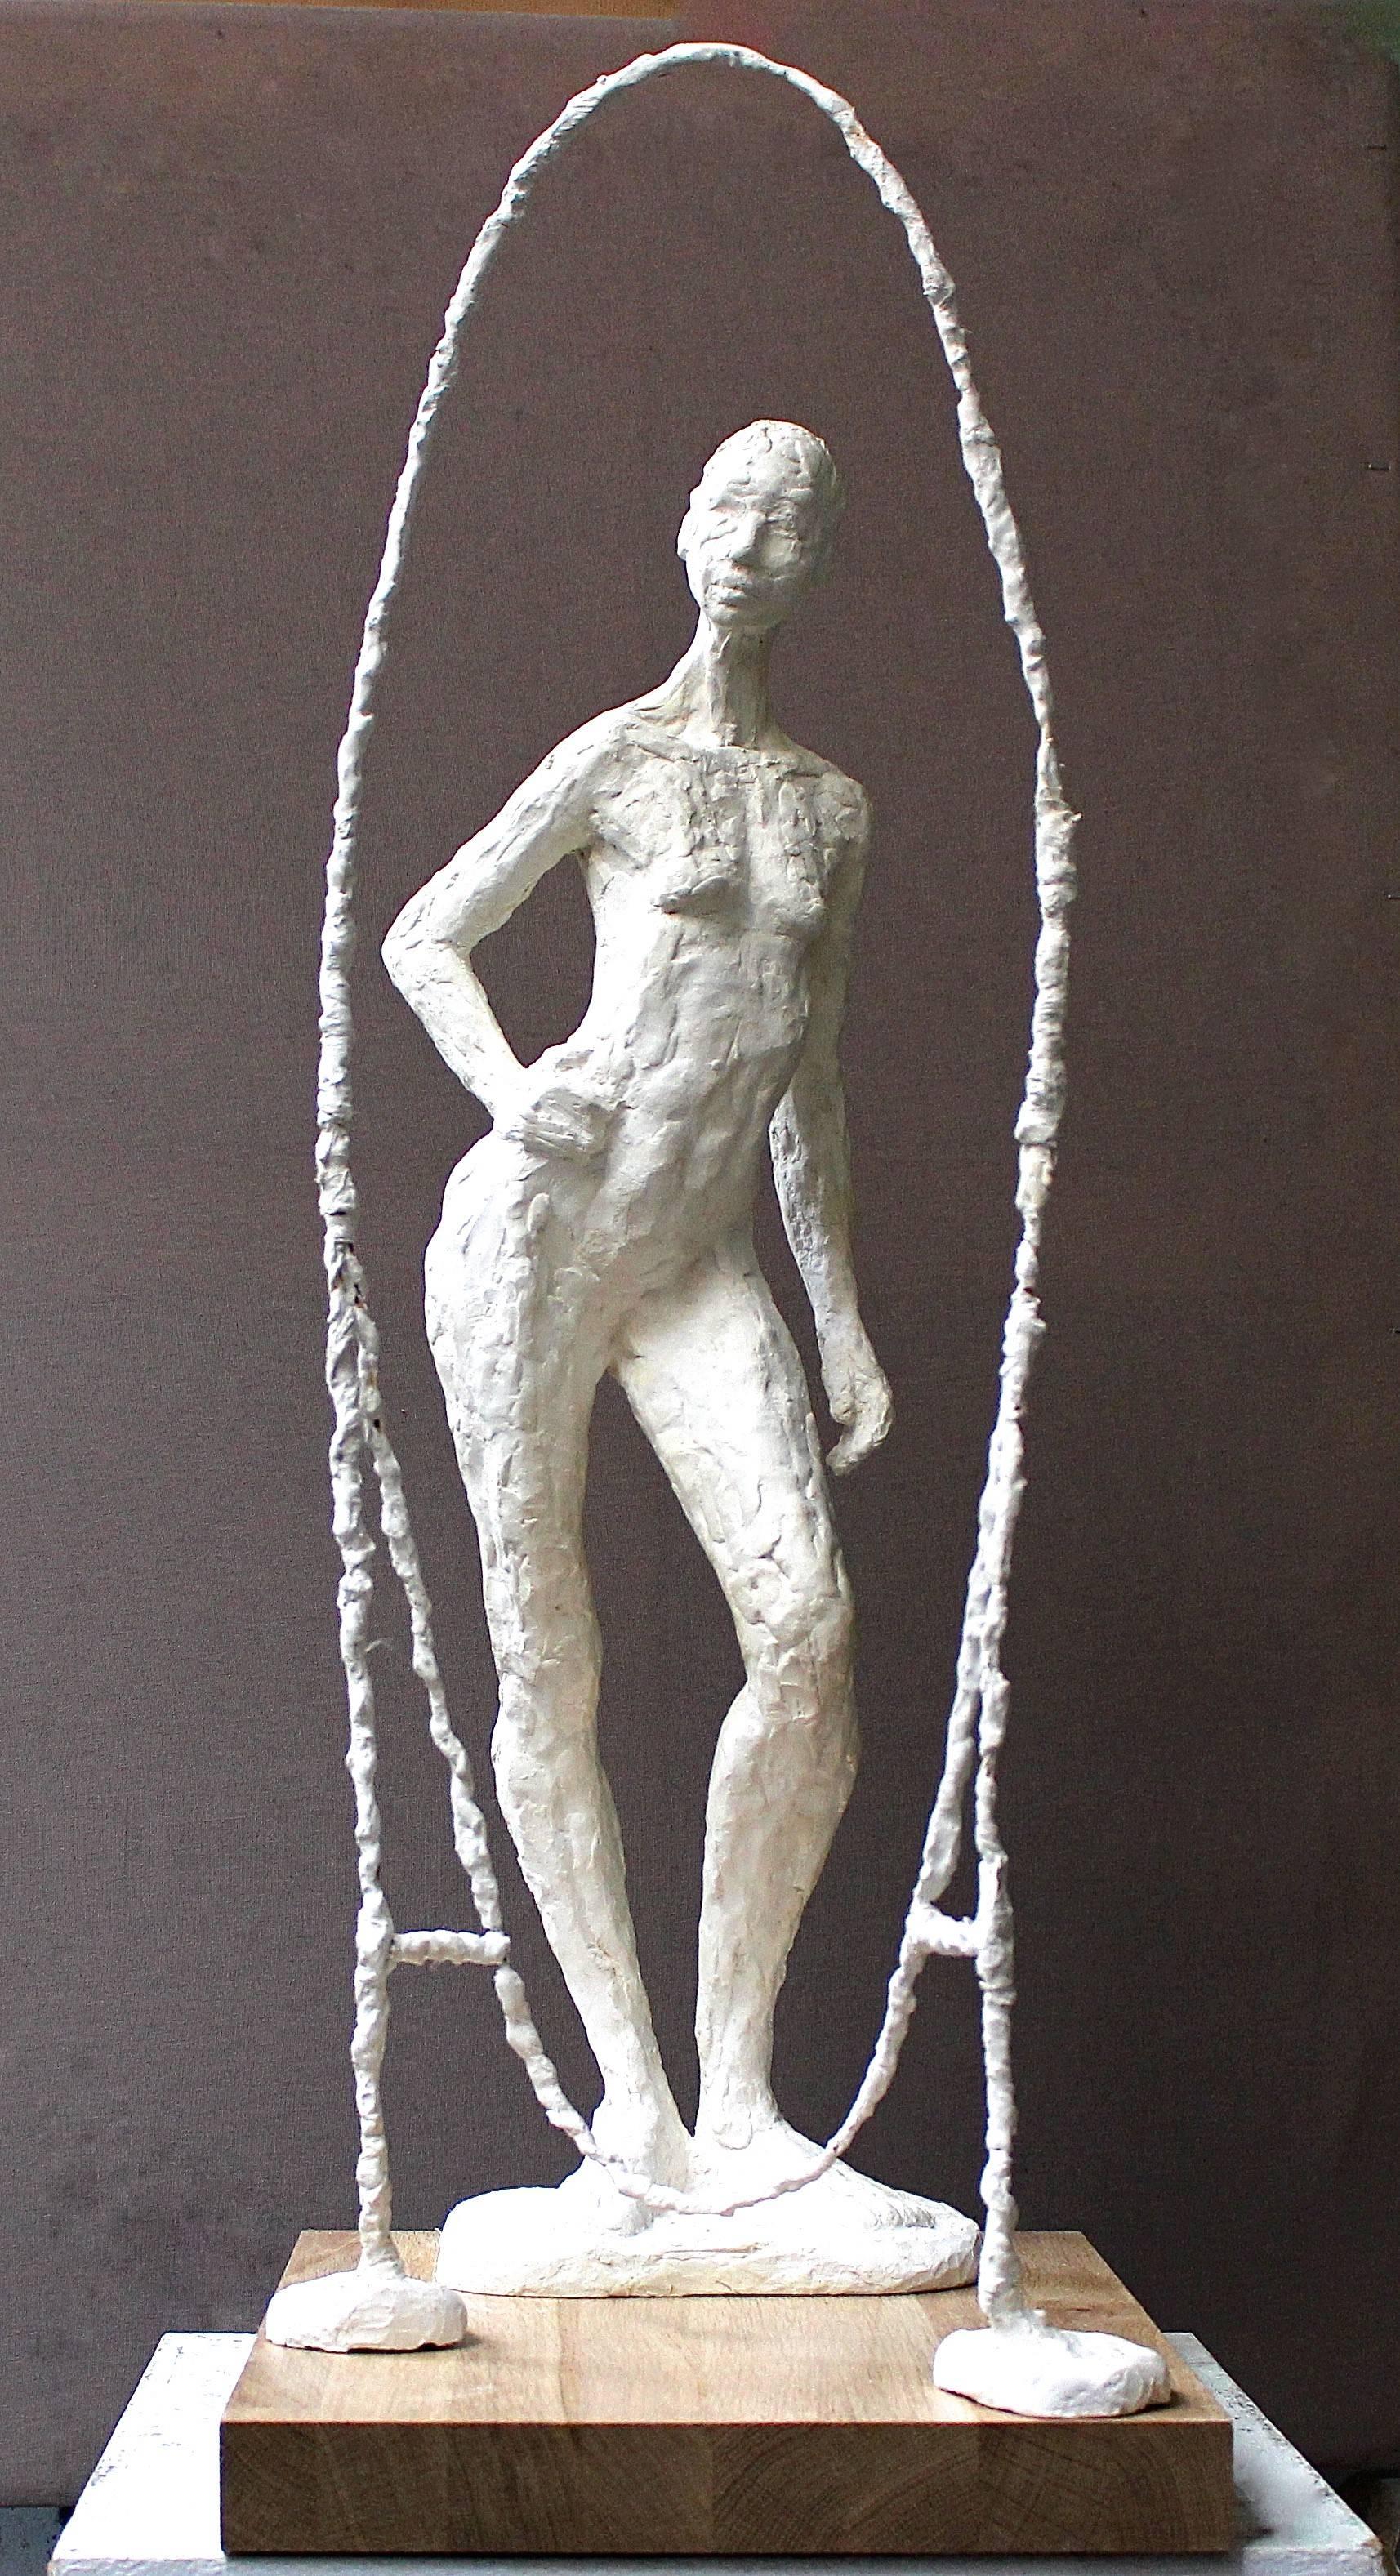 Französische Künstlerin Sidonie Laurens 

Titel der Skulptur: Reflet (Spiegelbild)

Abmessungen: 75 cm x 42 cm x 31 cm, aus Terrakotta 

Die Skulptur wird mit einem Sockel aus lackiertem Holz geliefert, der einen schönen Kontrast zu der weißen